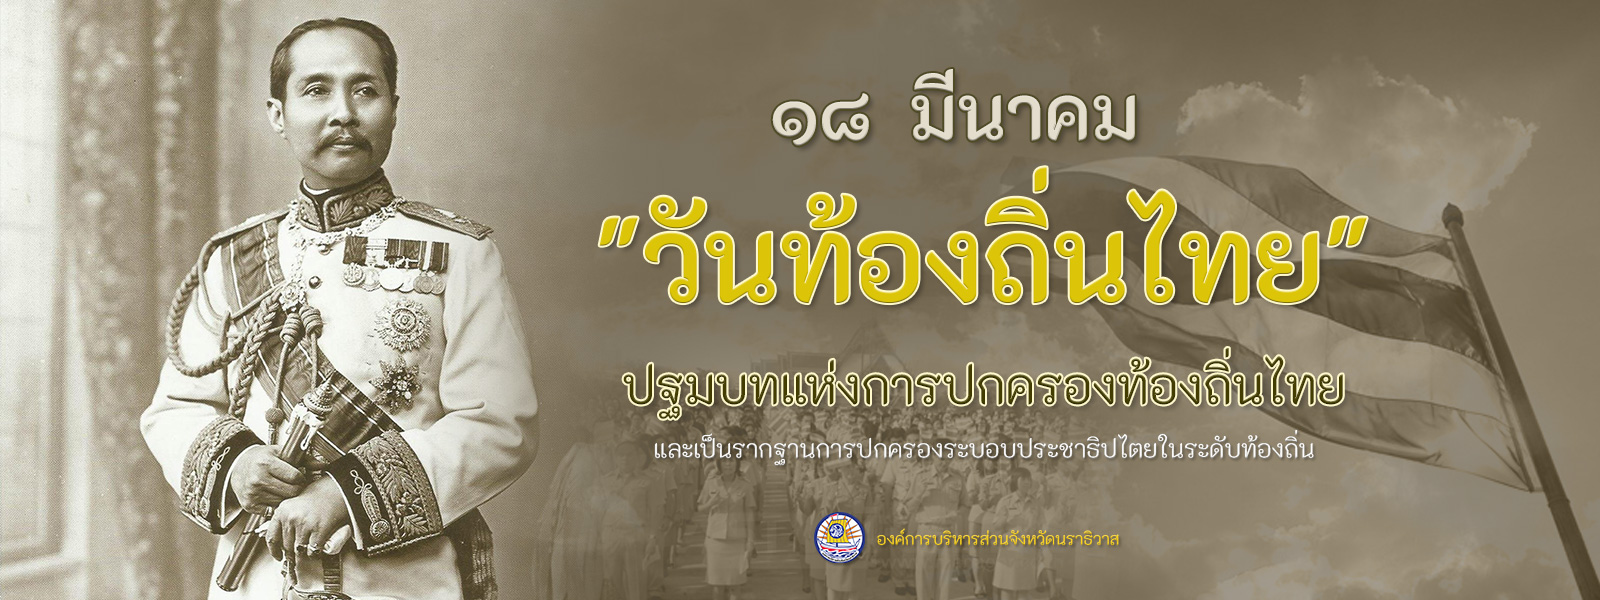 18 มีนาคม "วันท้องถิ่นไทย" - ปฐมบทแห่งการปกครองท้องถิ่นไทย